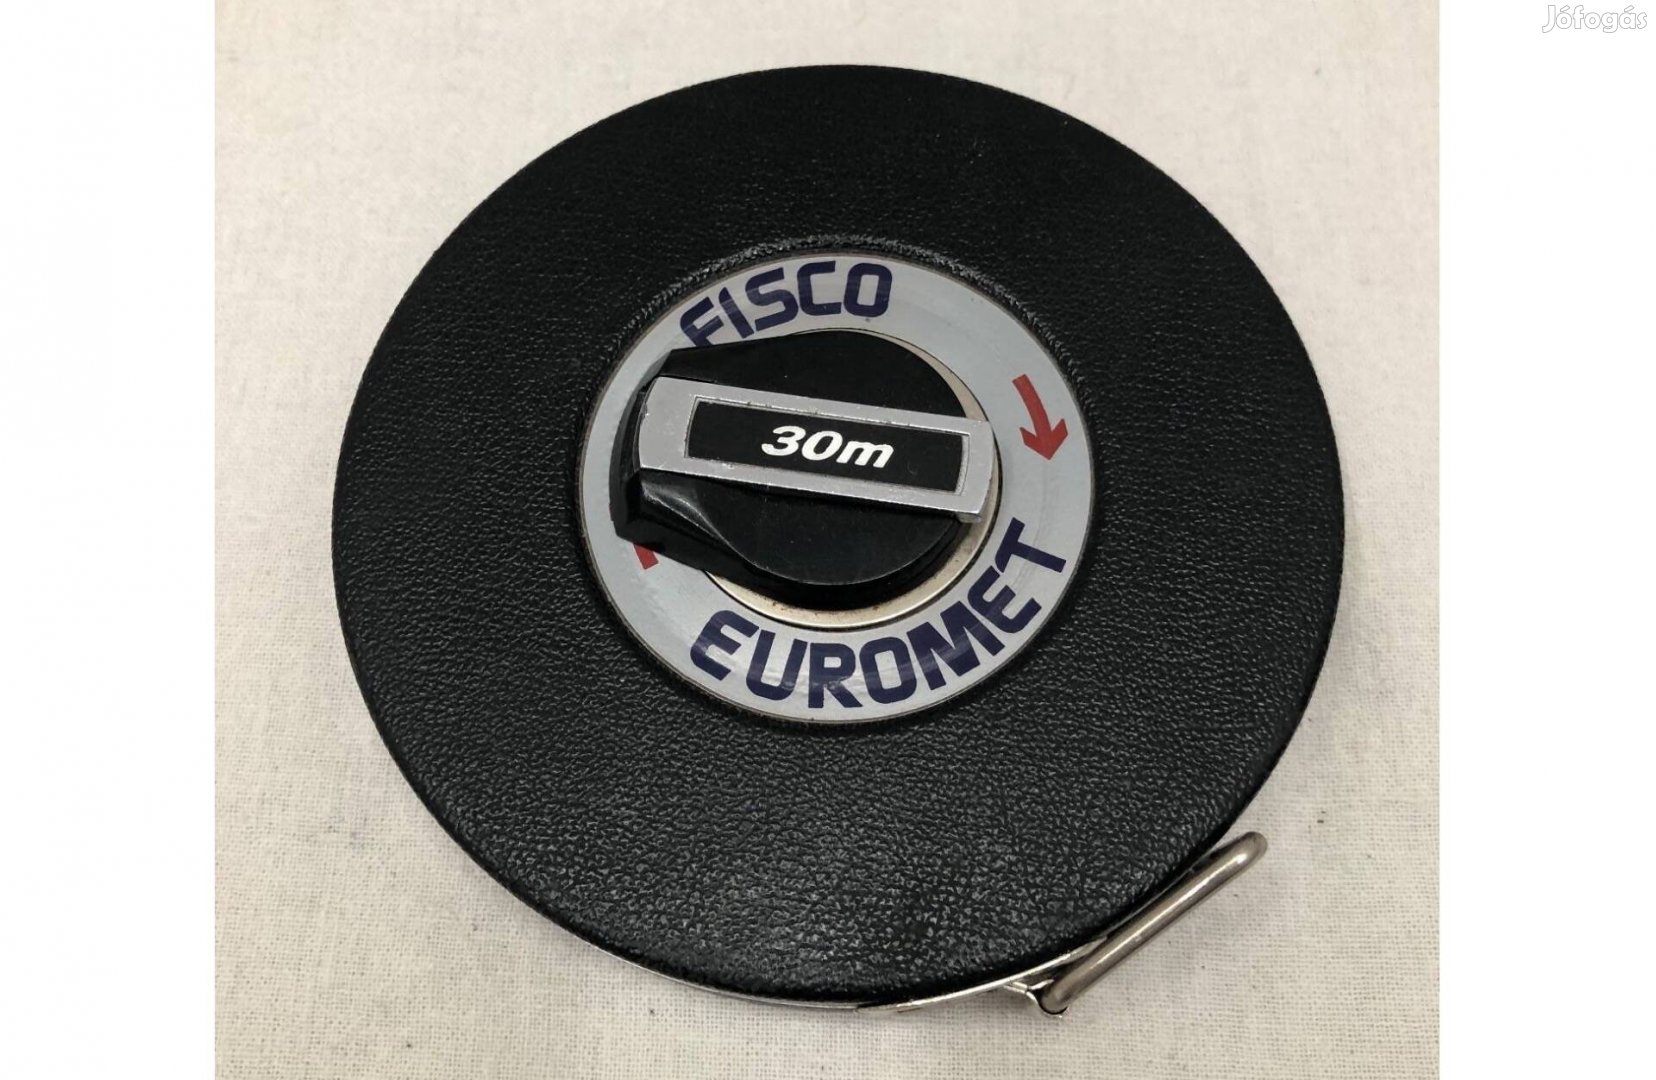 Fém Mérőszalag Fisco Euromet 30m